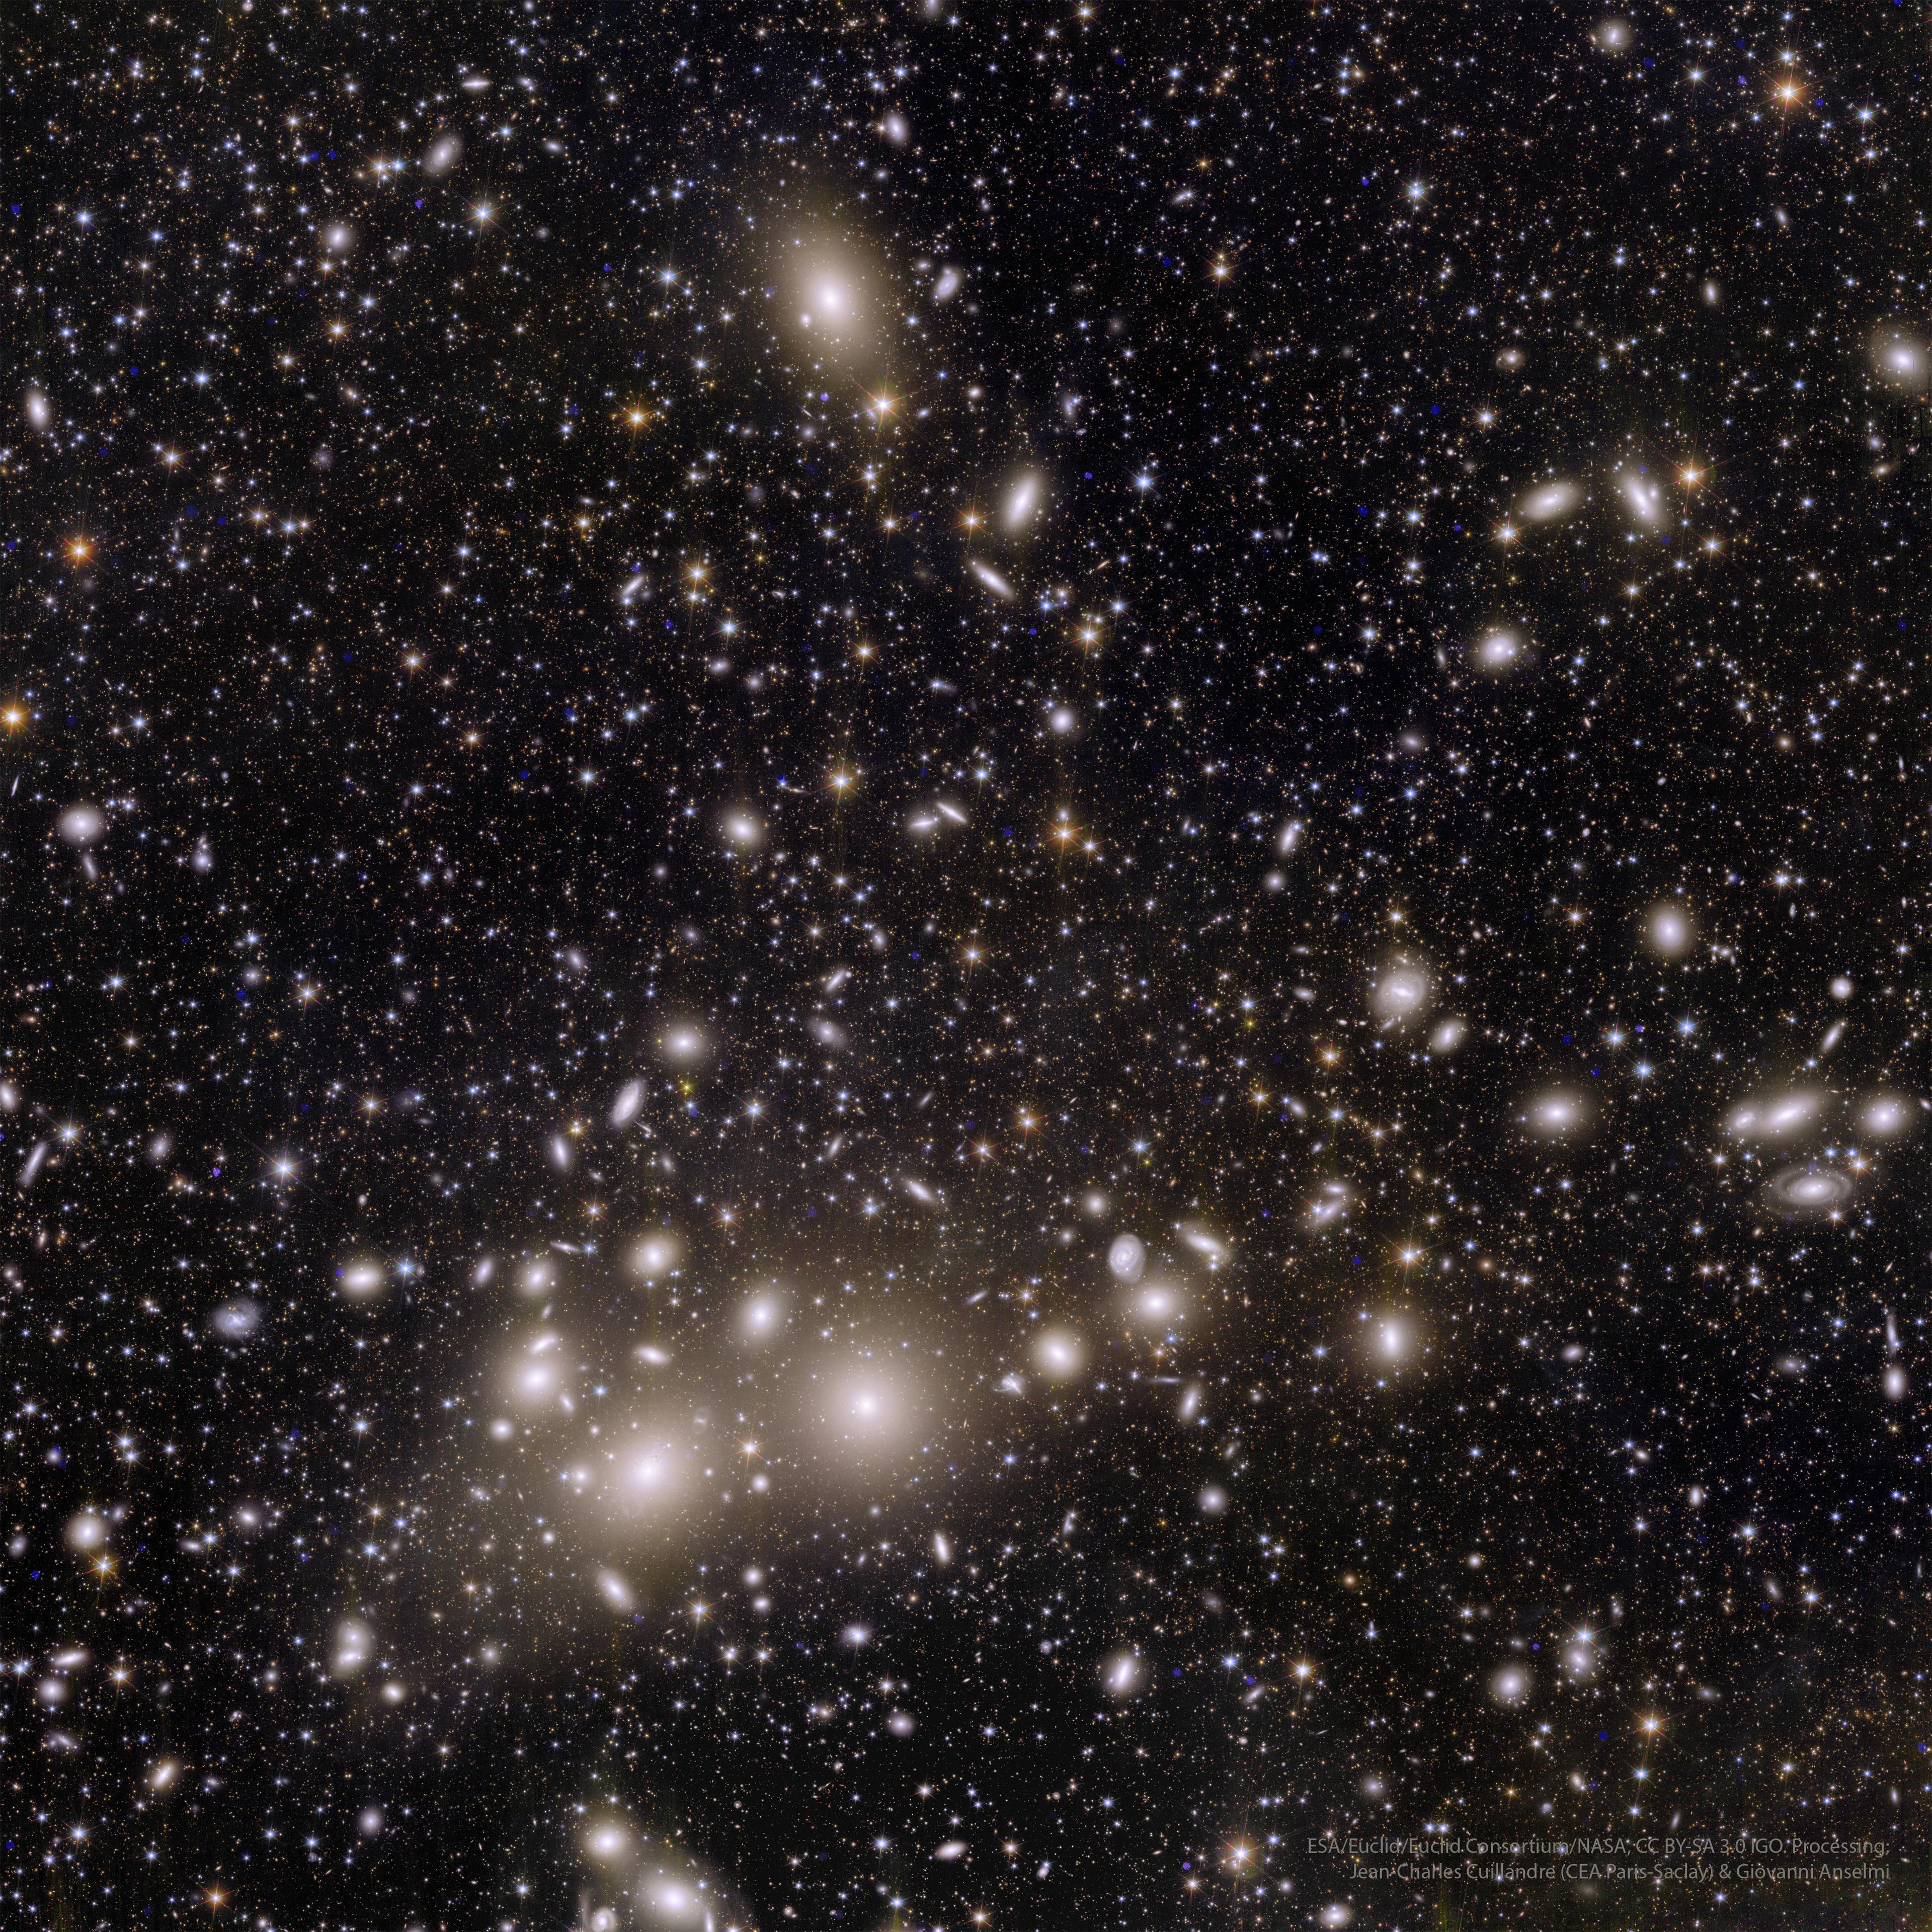 صورة فضاءٍ عميقة تُظهِر العديد من المجرّات، بعضها يُرى في ضلعٍ مركزيٍّ يجري أُفُقيّاً تقريباً عبر مركز الصورة.